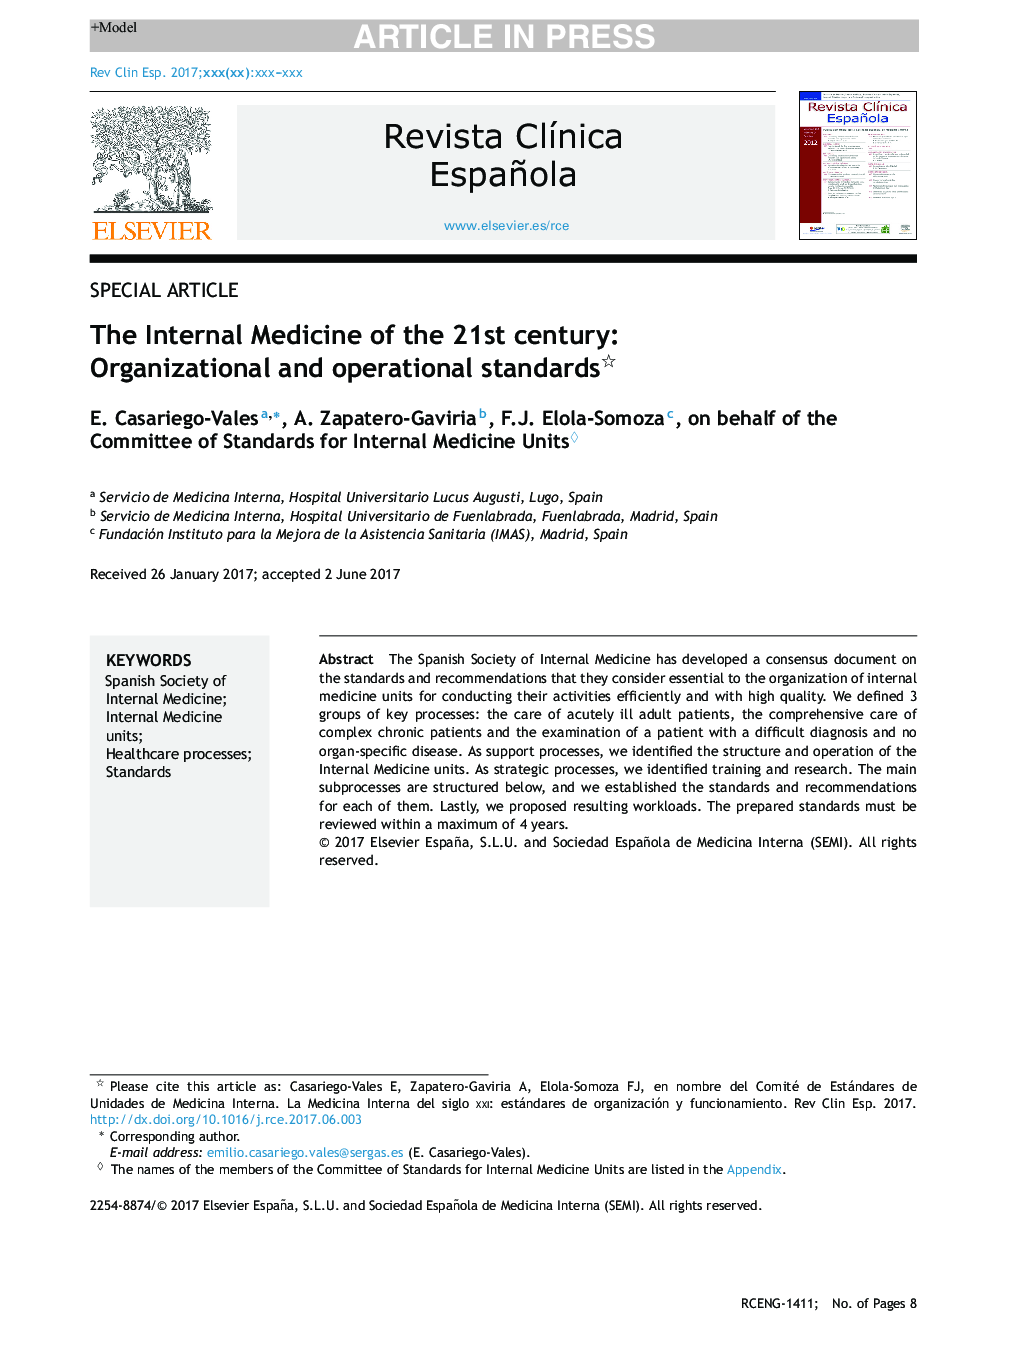 پزشکی داخلی قرن بیست و یکم: استانداردهای سازمانی و عملیاتی 